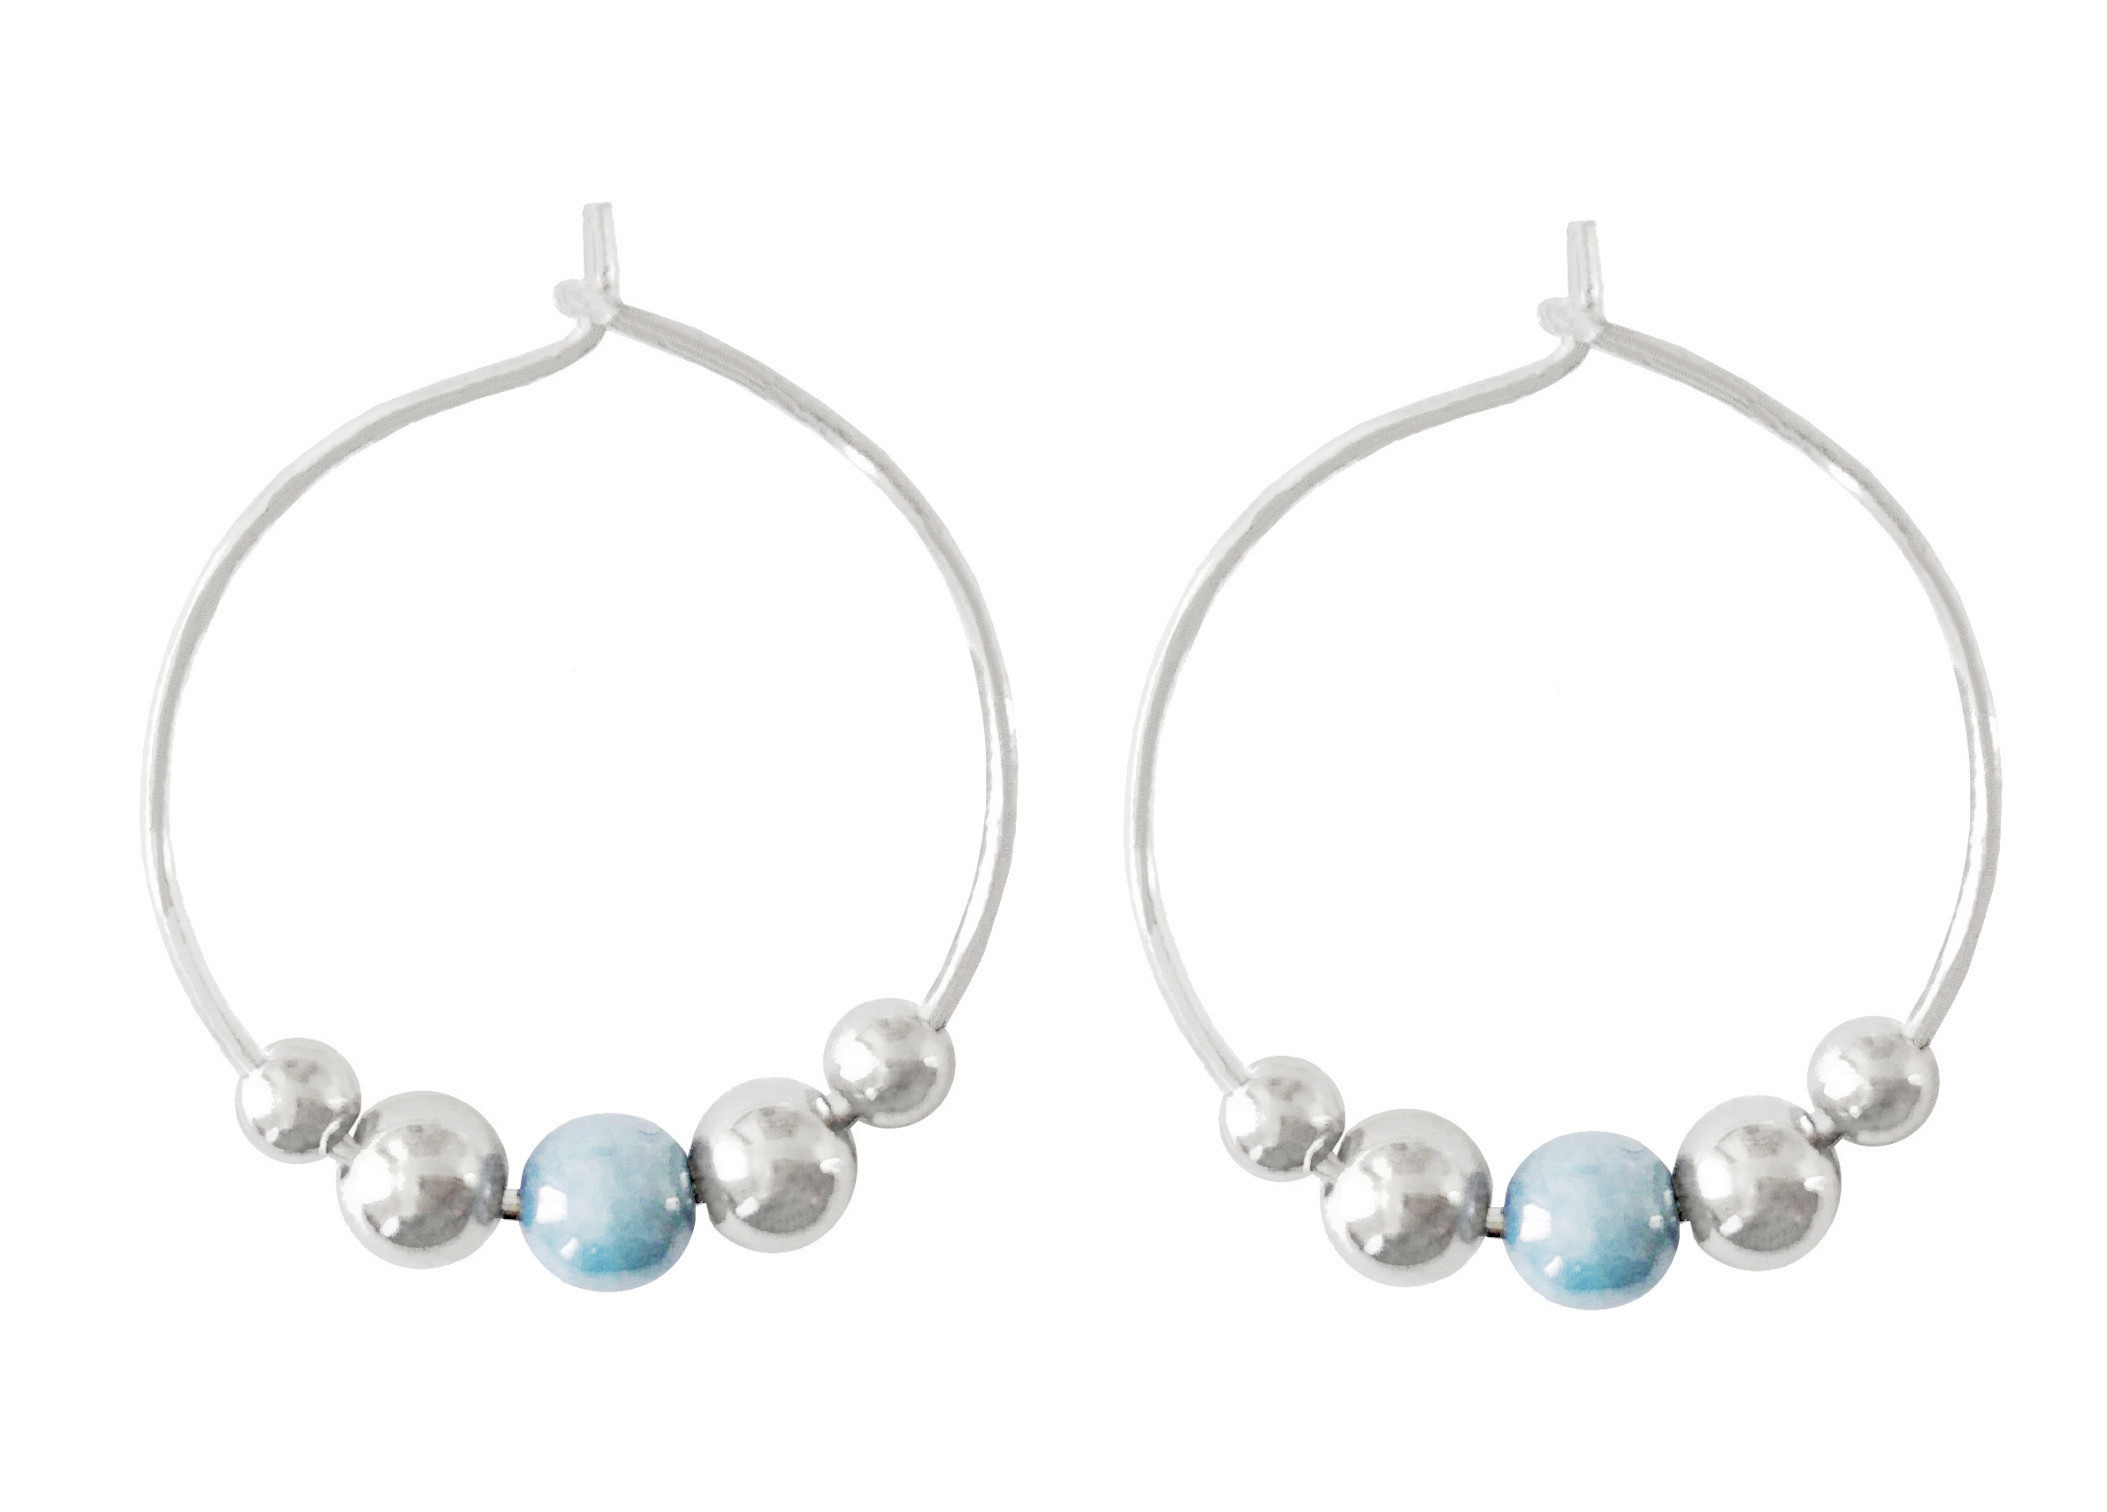 Boucles doreilles IFATE2 créoles acier inoxydable argent perle bleue minimaliste